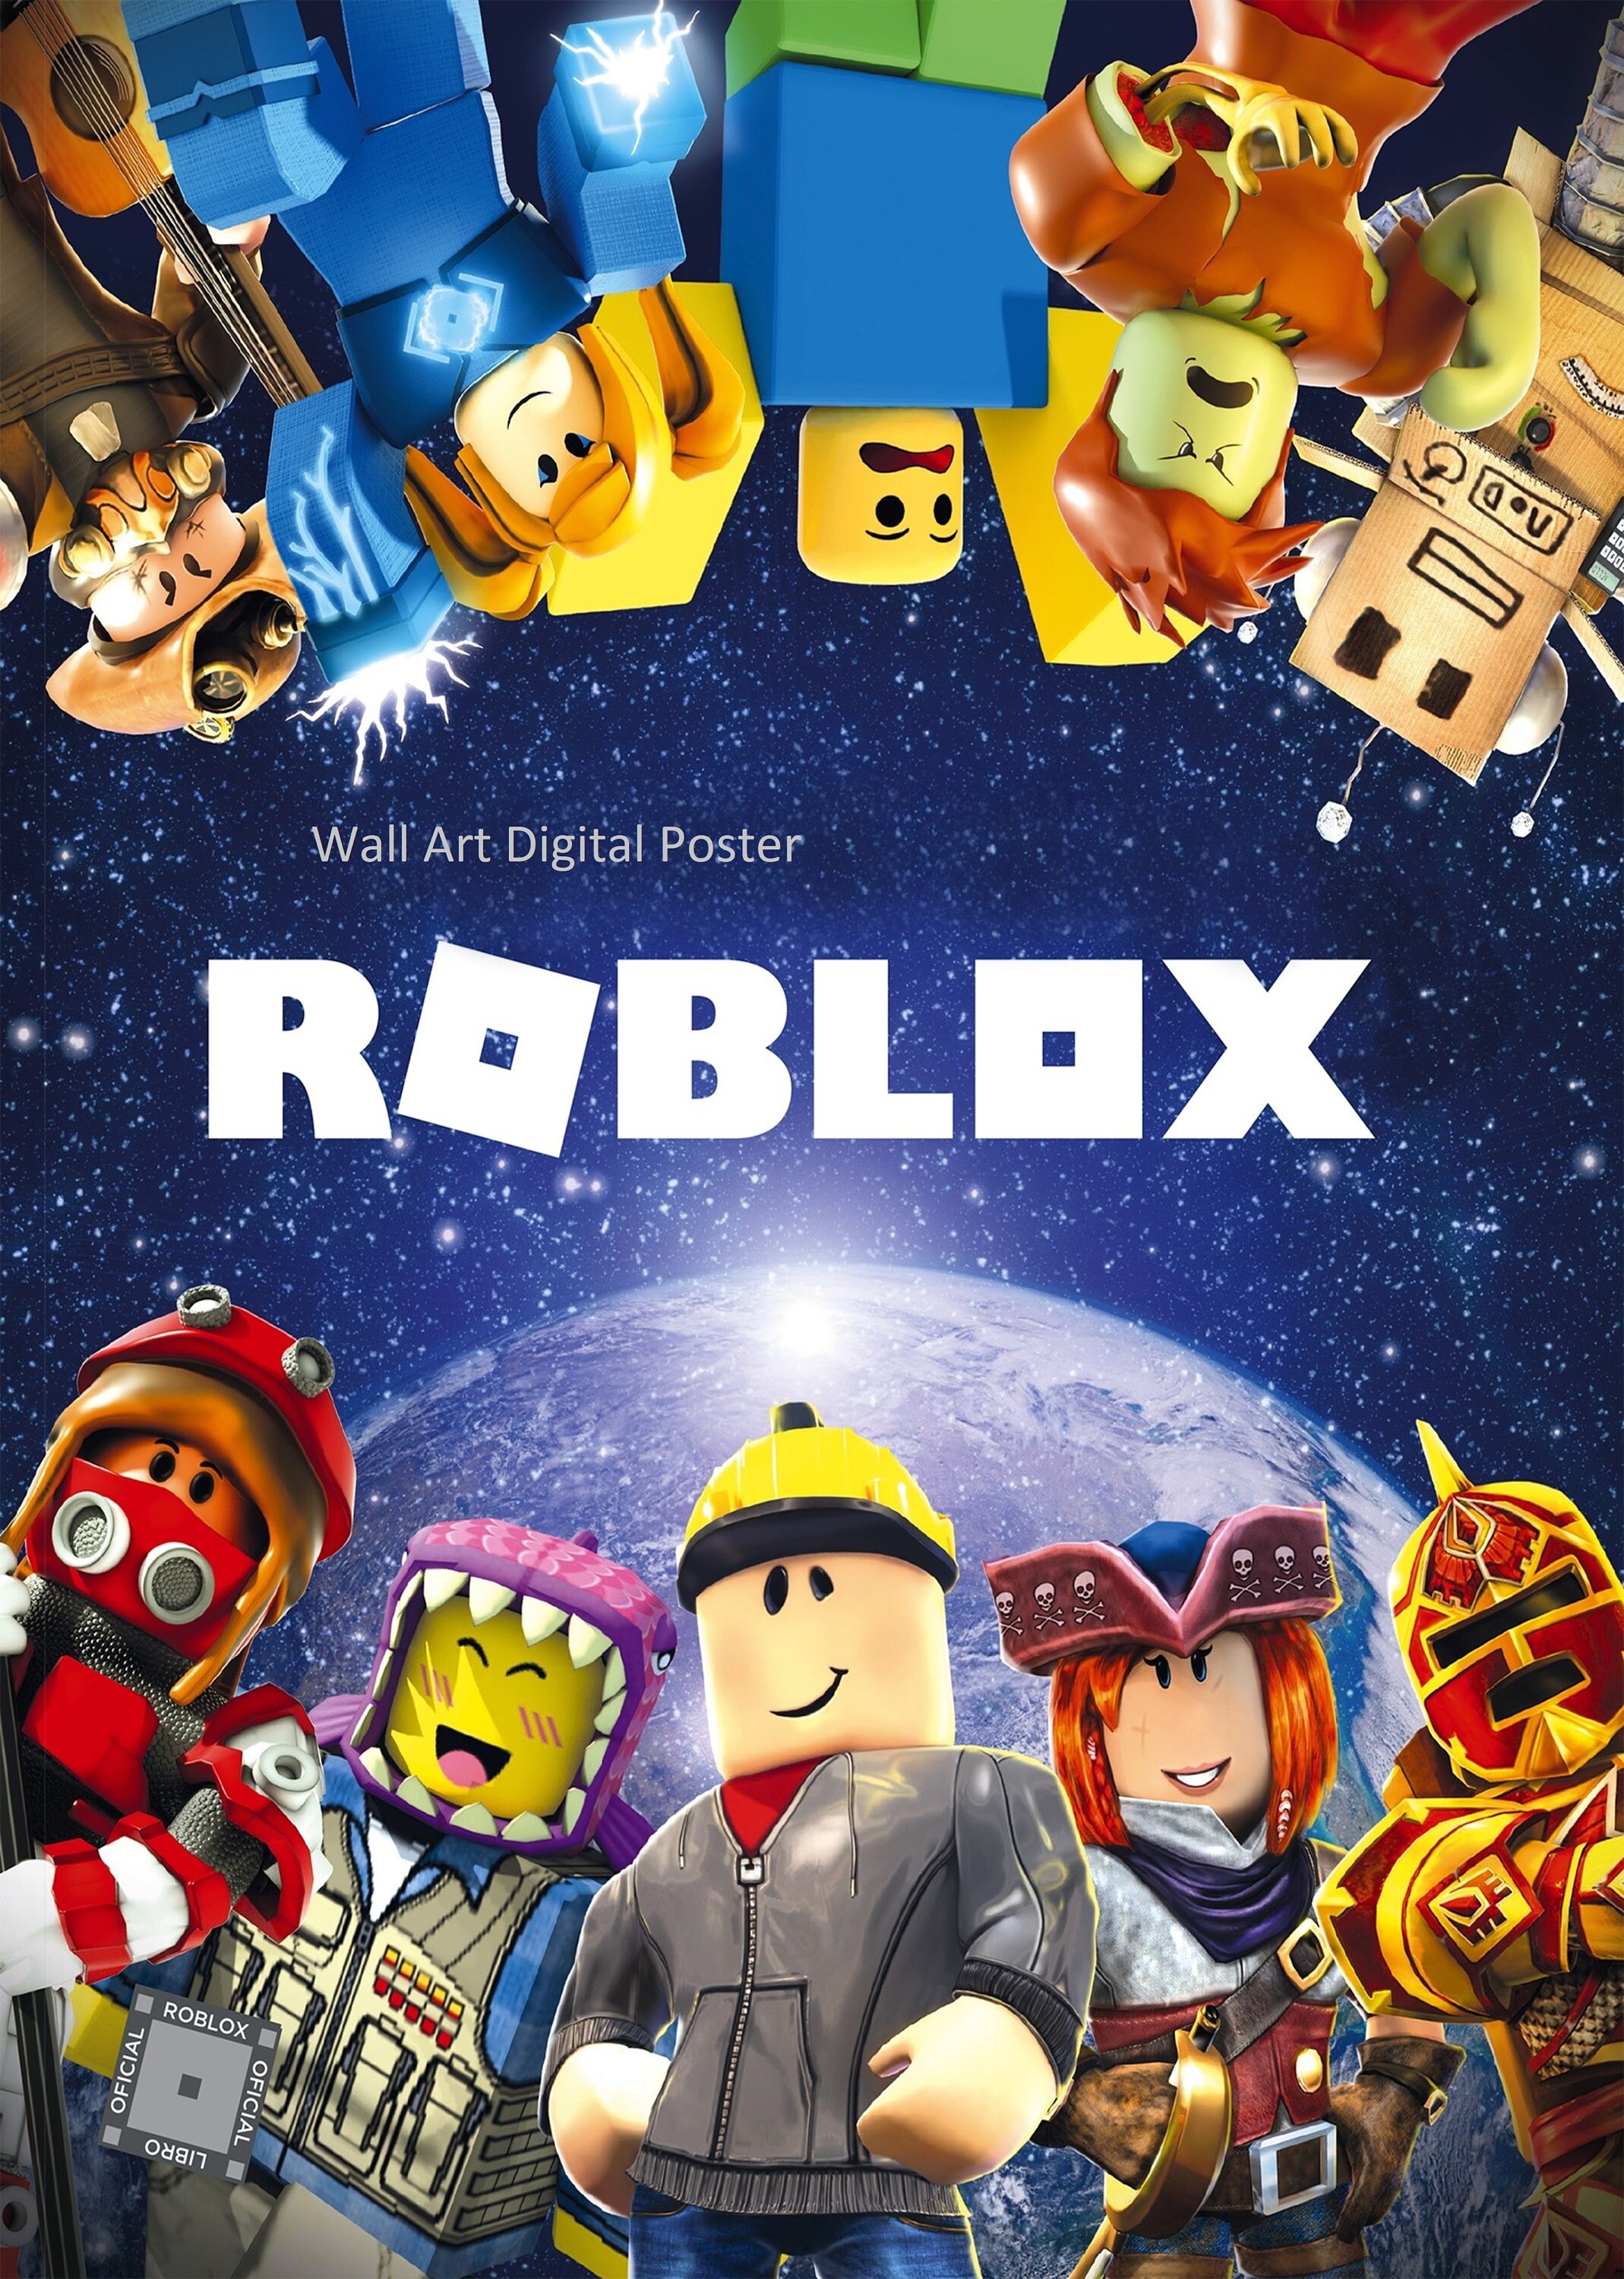 Roblox affiche de jeu vidéo téléchargement numérique | Etsy